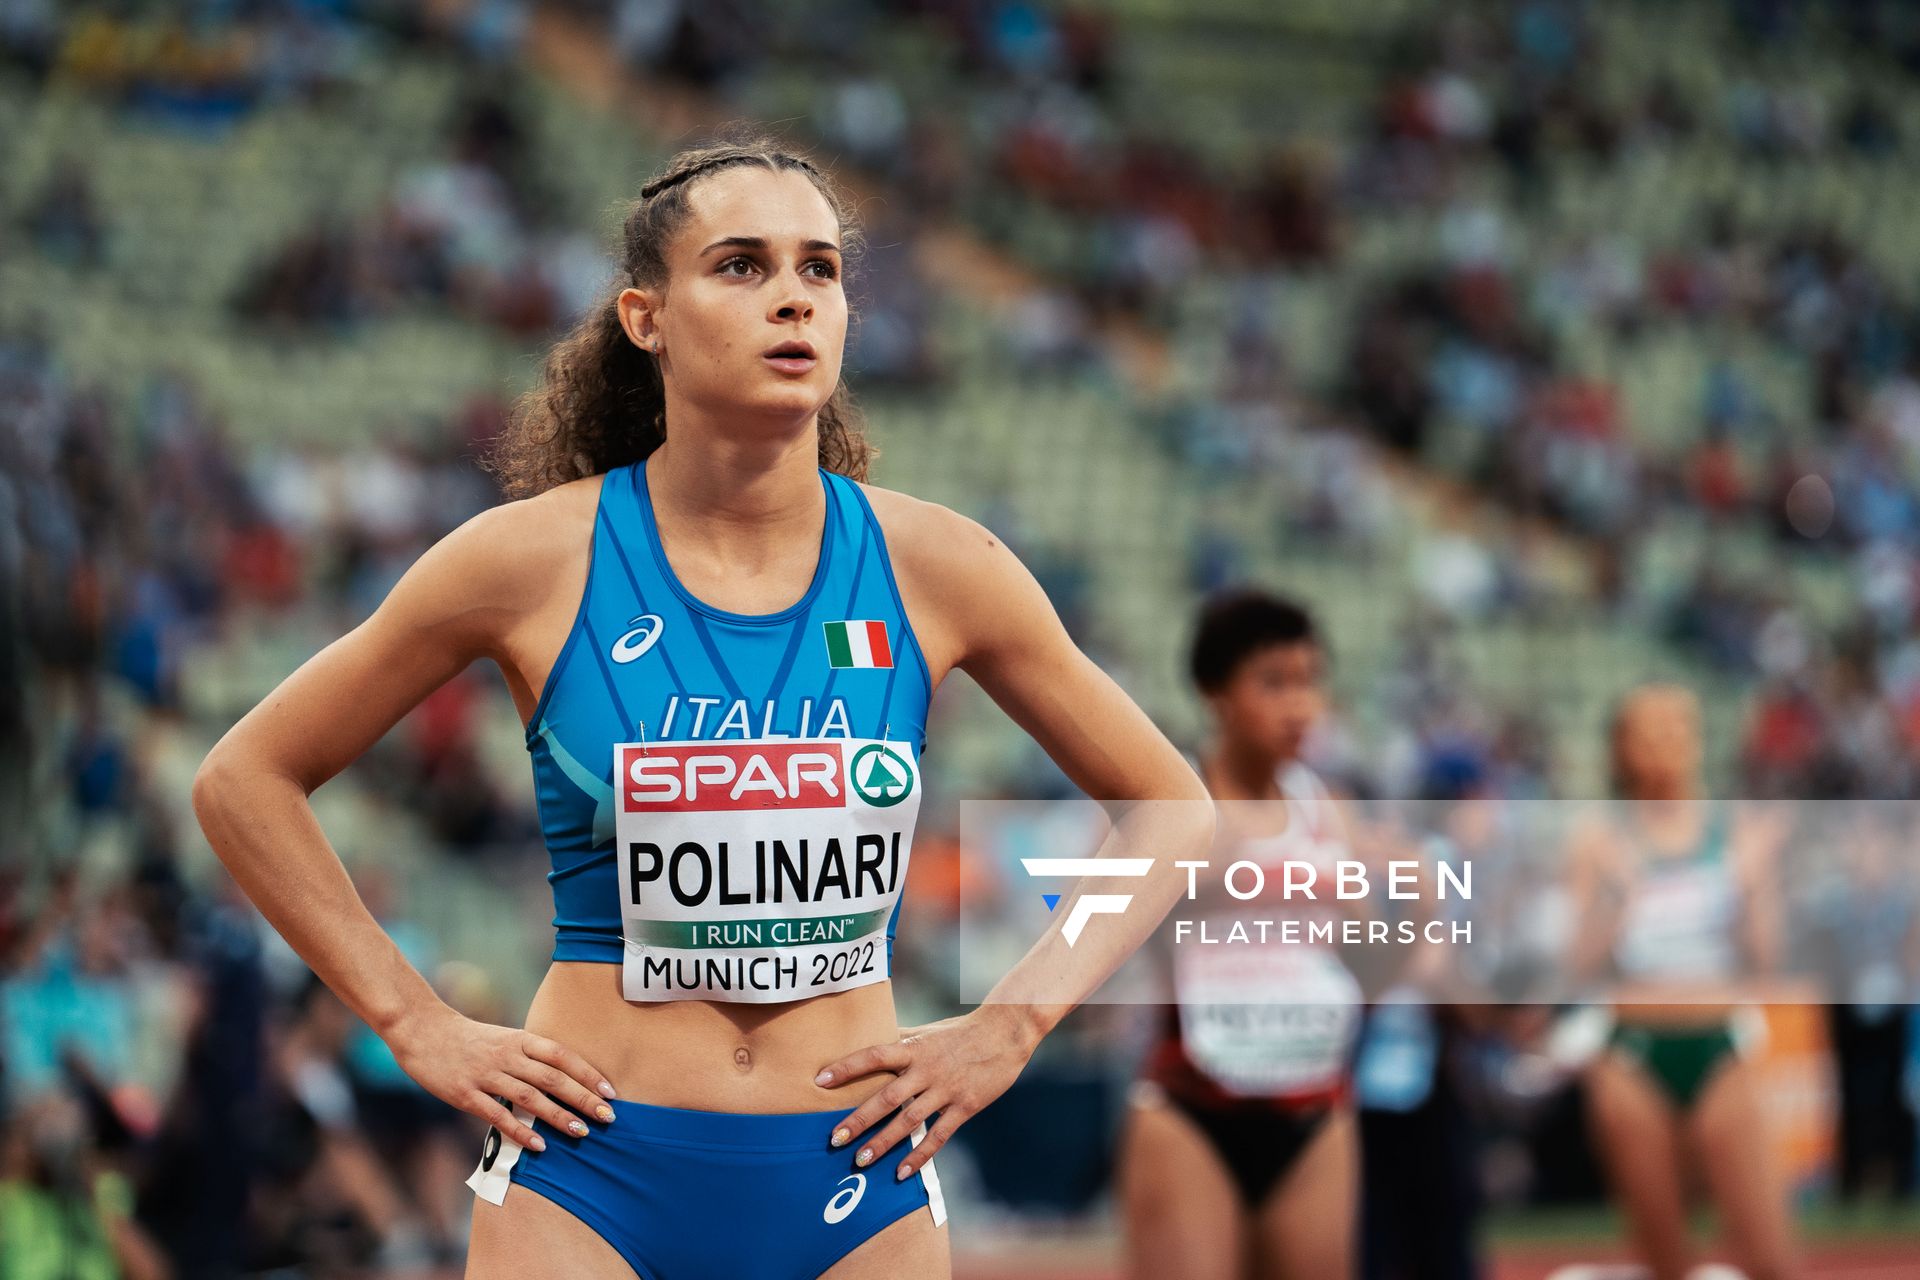 Anna Polinari (ITA) ueber 400m am 15.08.2022 bei den Leichtathletik-Europameisterschaften in Muenchen